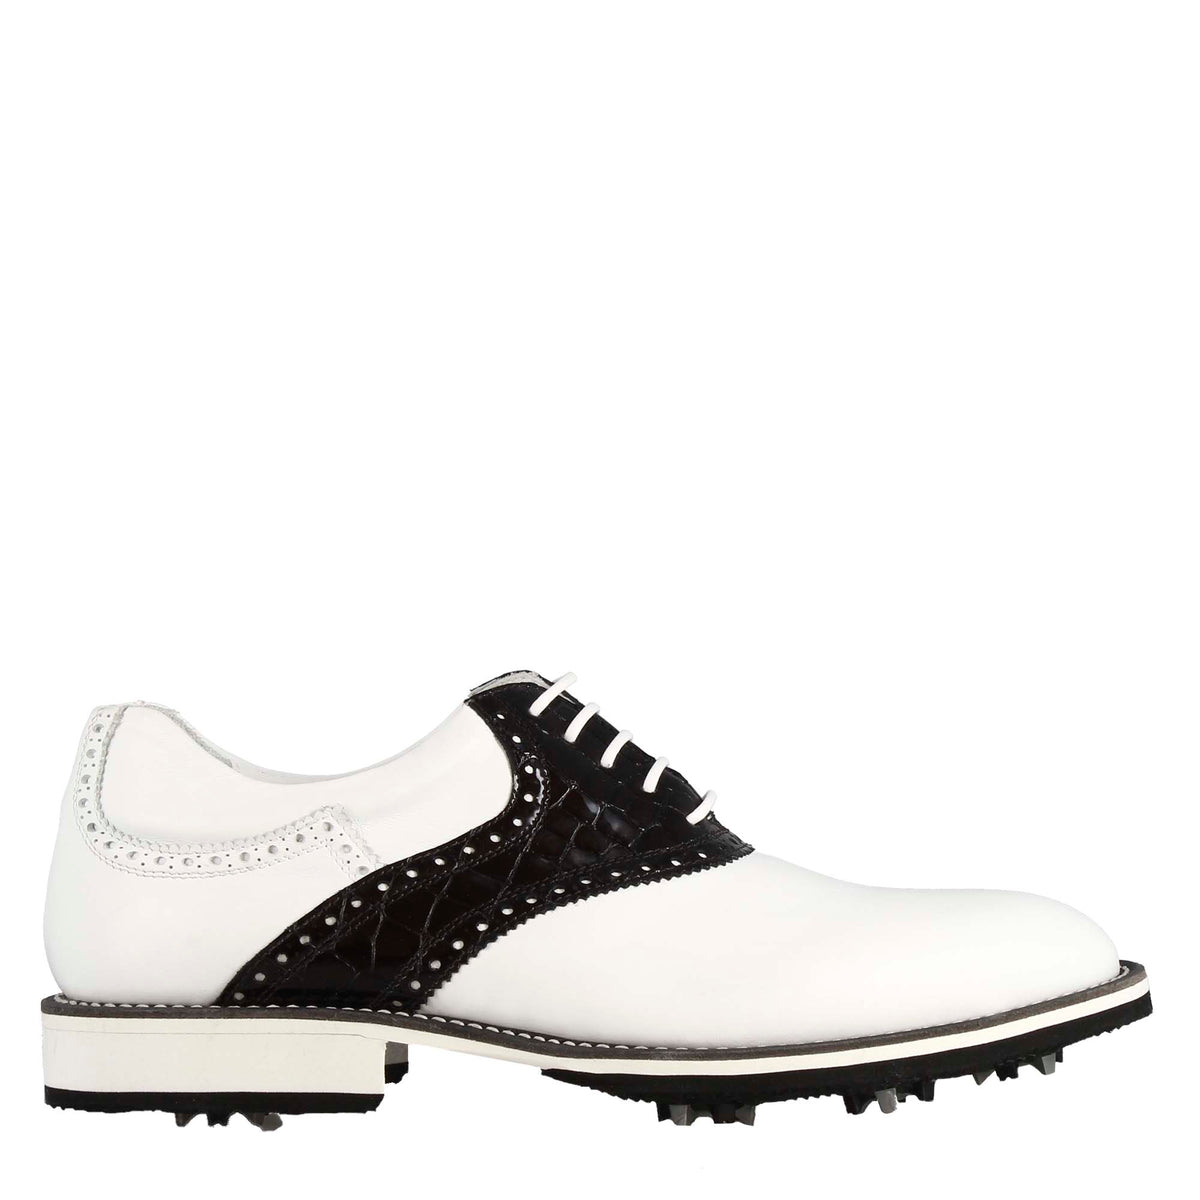 Scarpa golf artigianale da uomo in pelle colore bianco con dettagli in pelle colore nero.